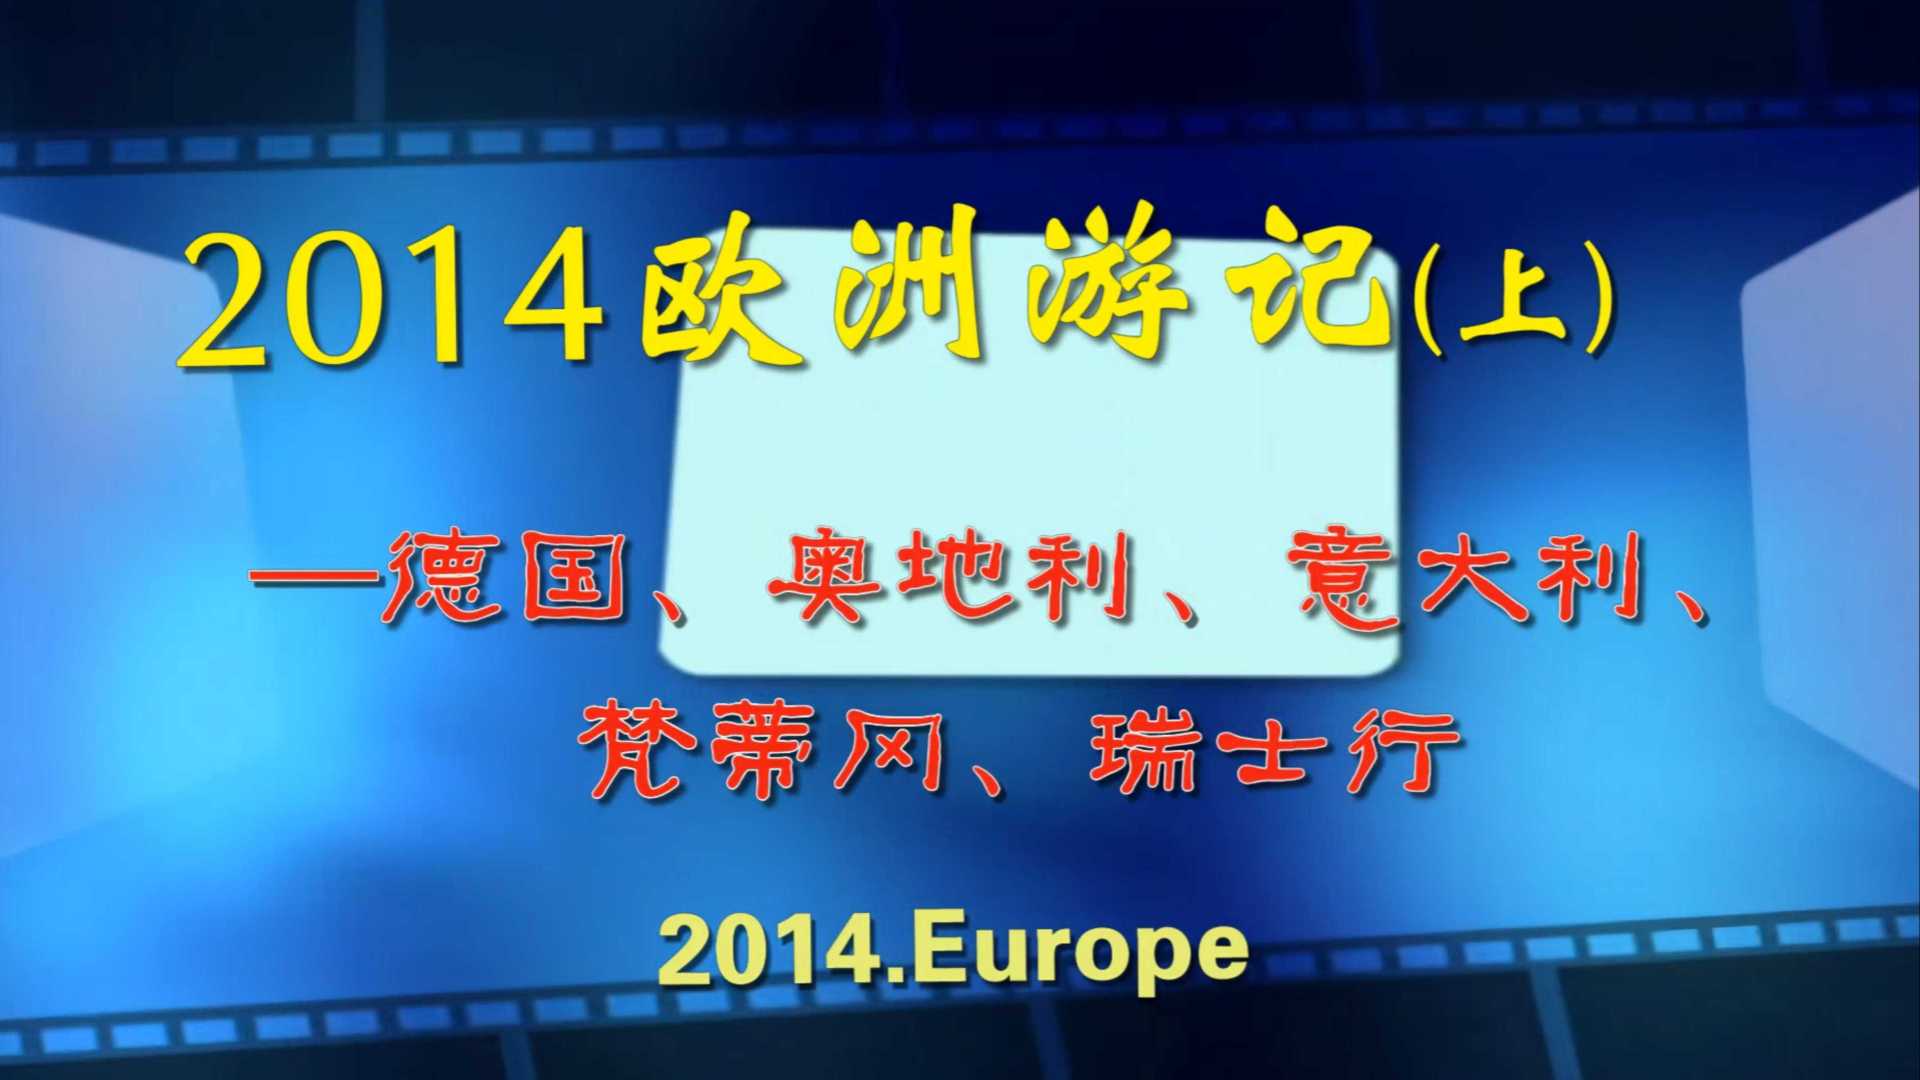 2014欧洲游记(上)—德国、奥地利、意大利、 梵蒂冈、瑞士行